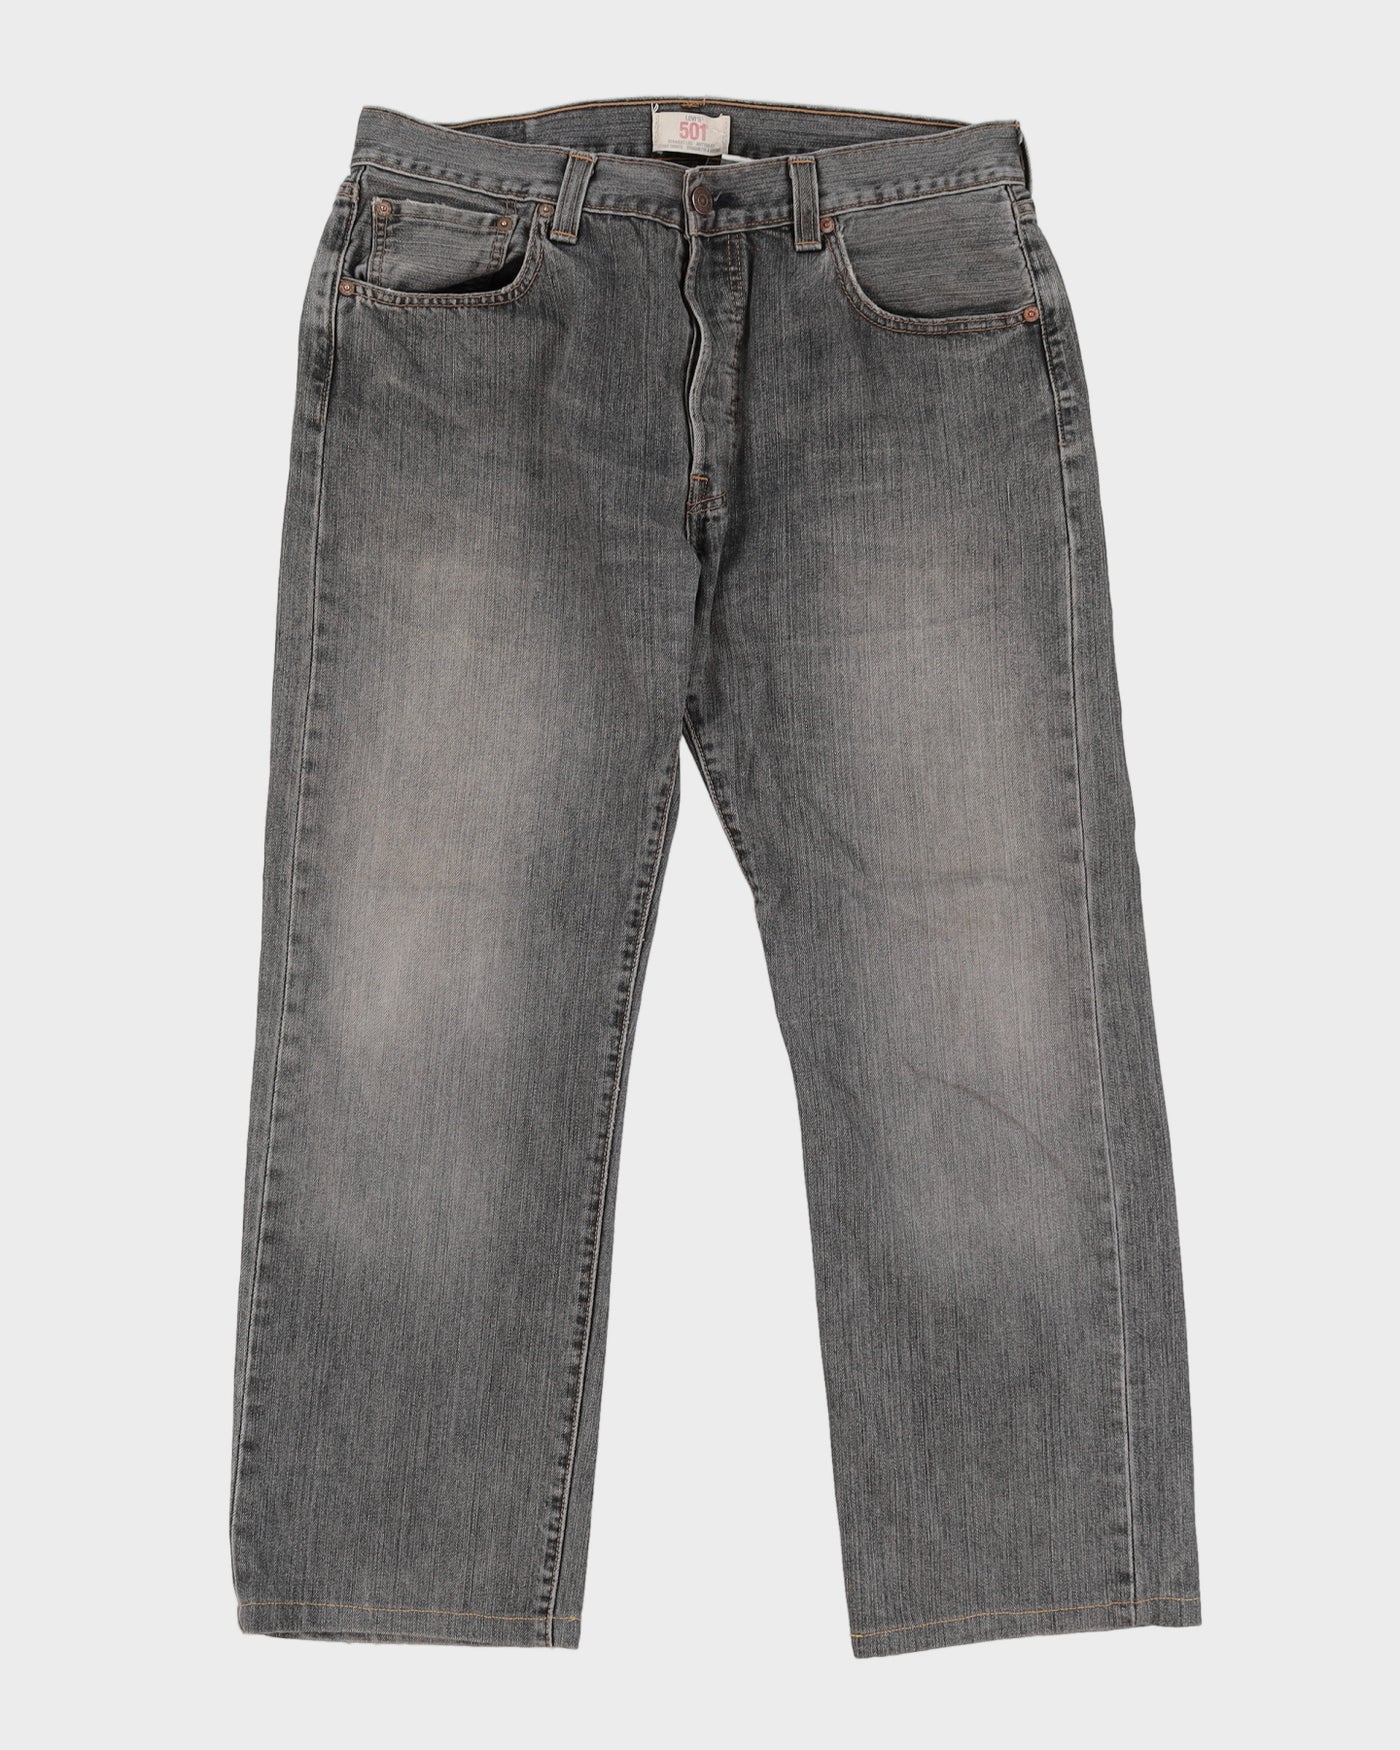 Levi's 501 Dark Wash Jeans - W34 L28